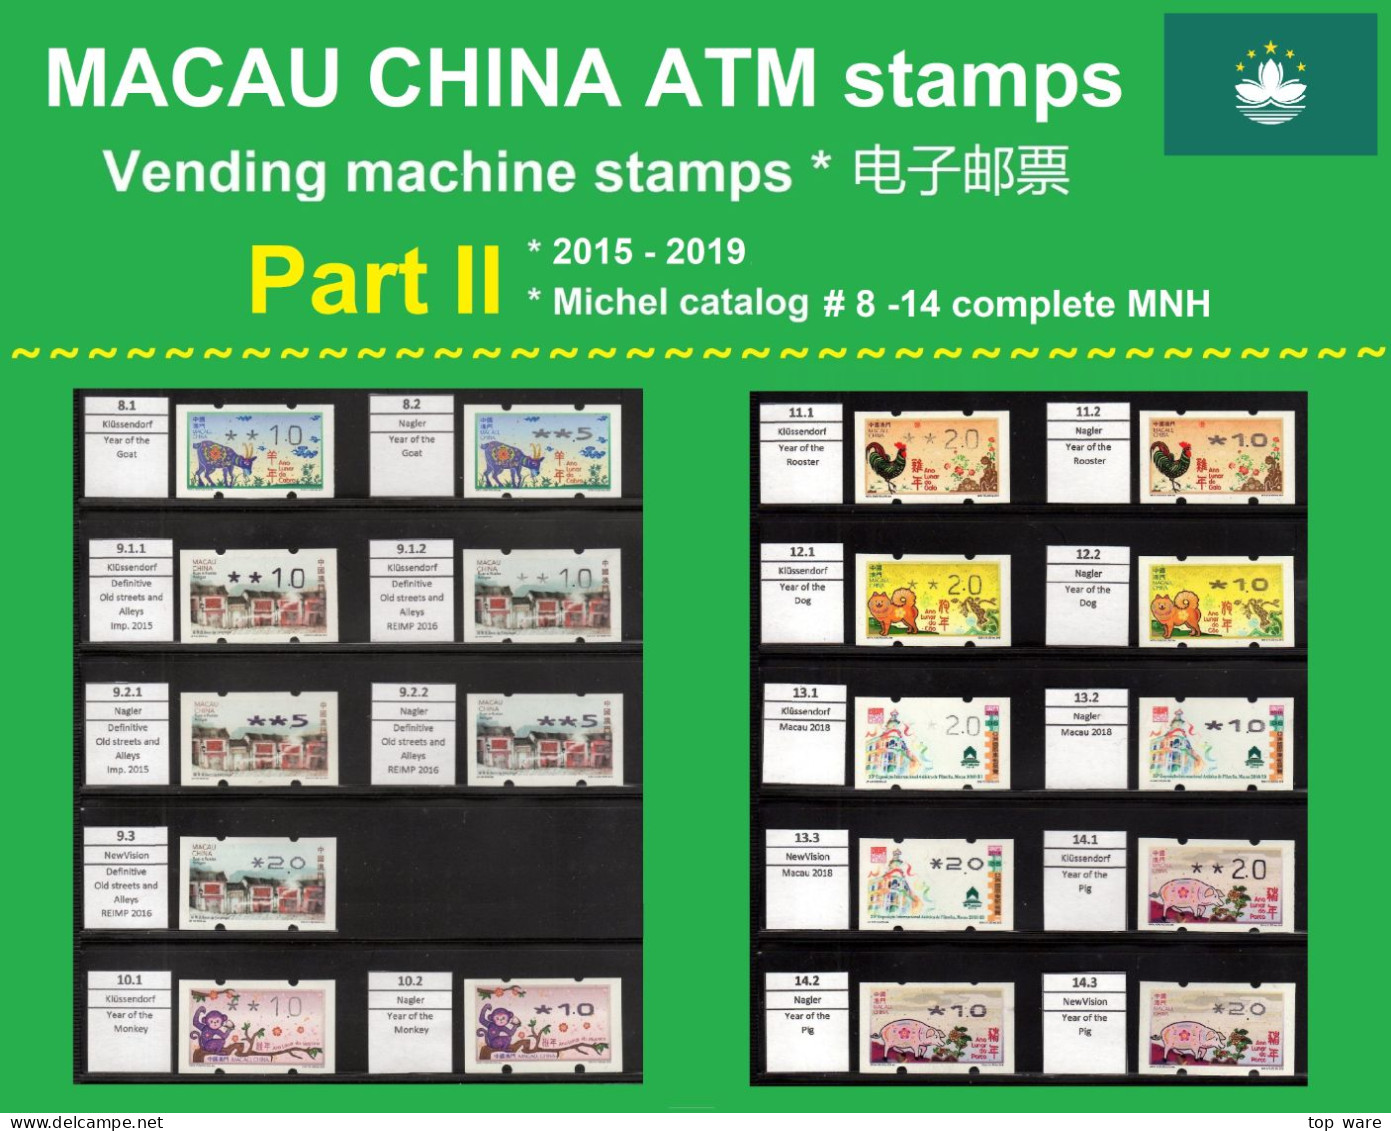 Macau China ATM Sammlung Part II / 2015-2019 MNH / Klussendorf Nagler Frama CVP Automatenmarken - Automatenmarken